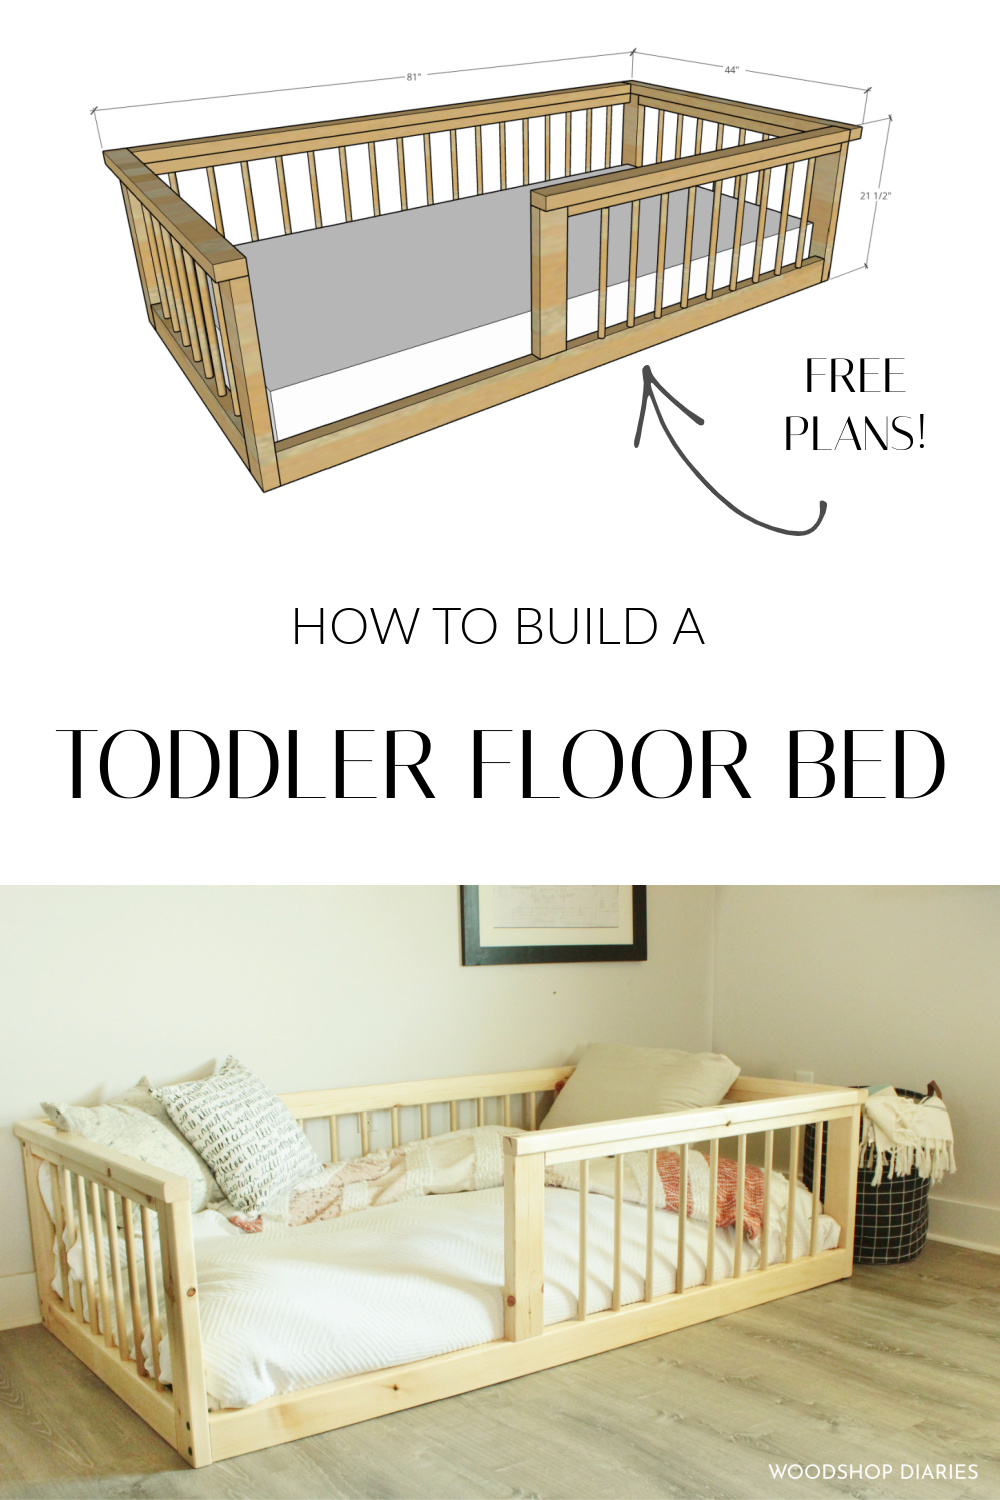 Diy Toddler Floor Bed Made From 2x4s, Infant Floor Bed Frame Toddler Diy